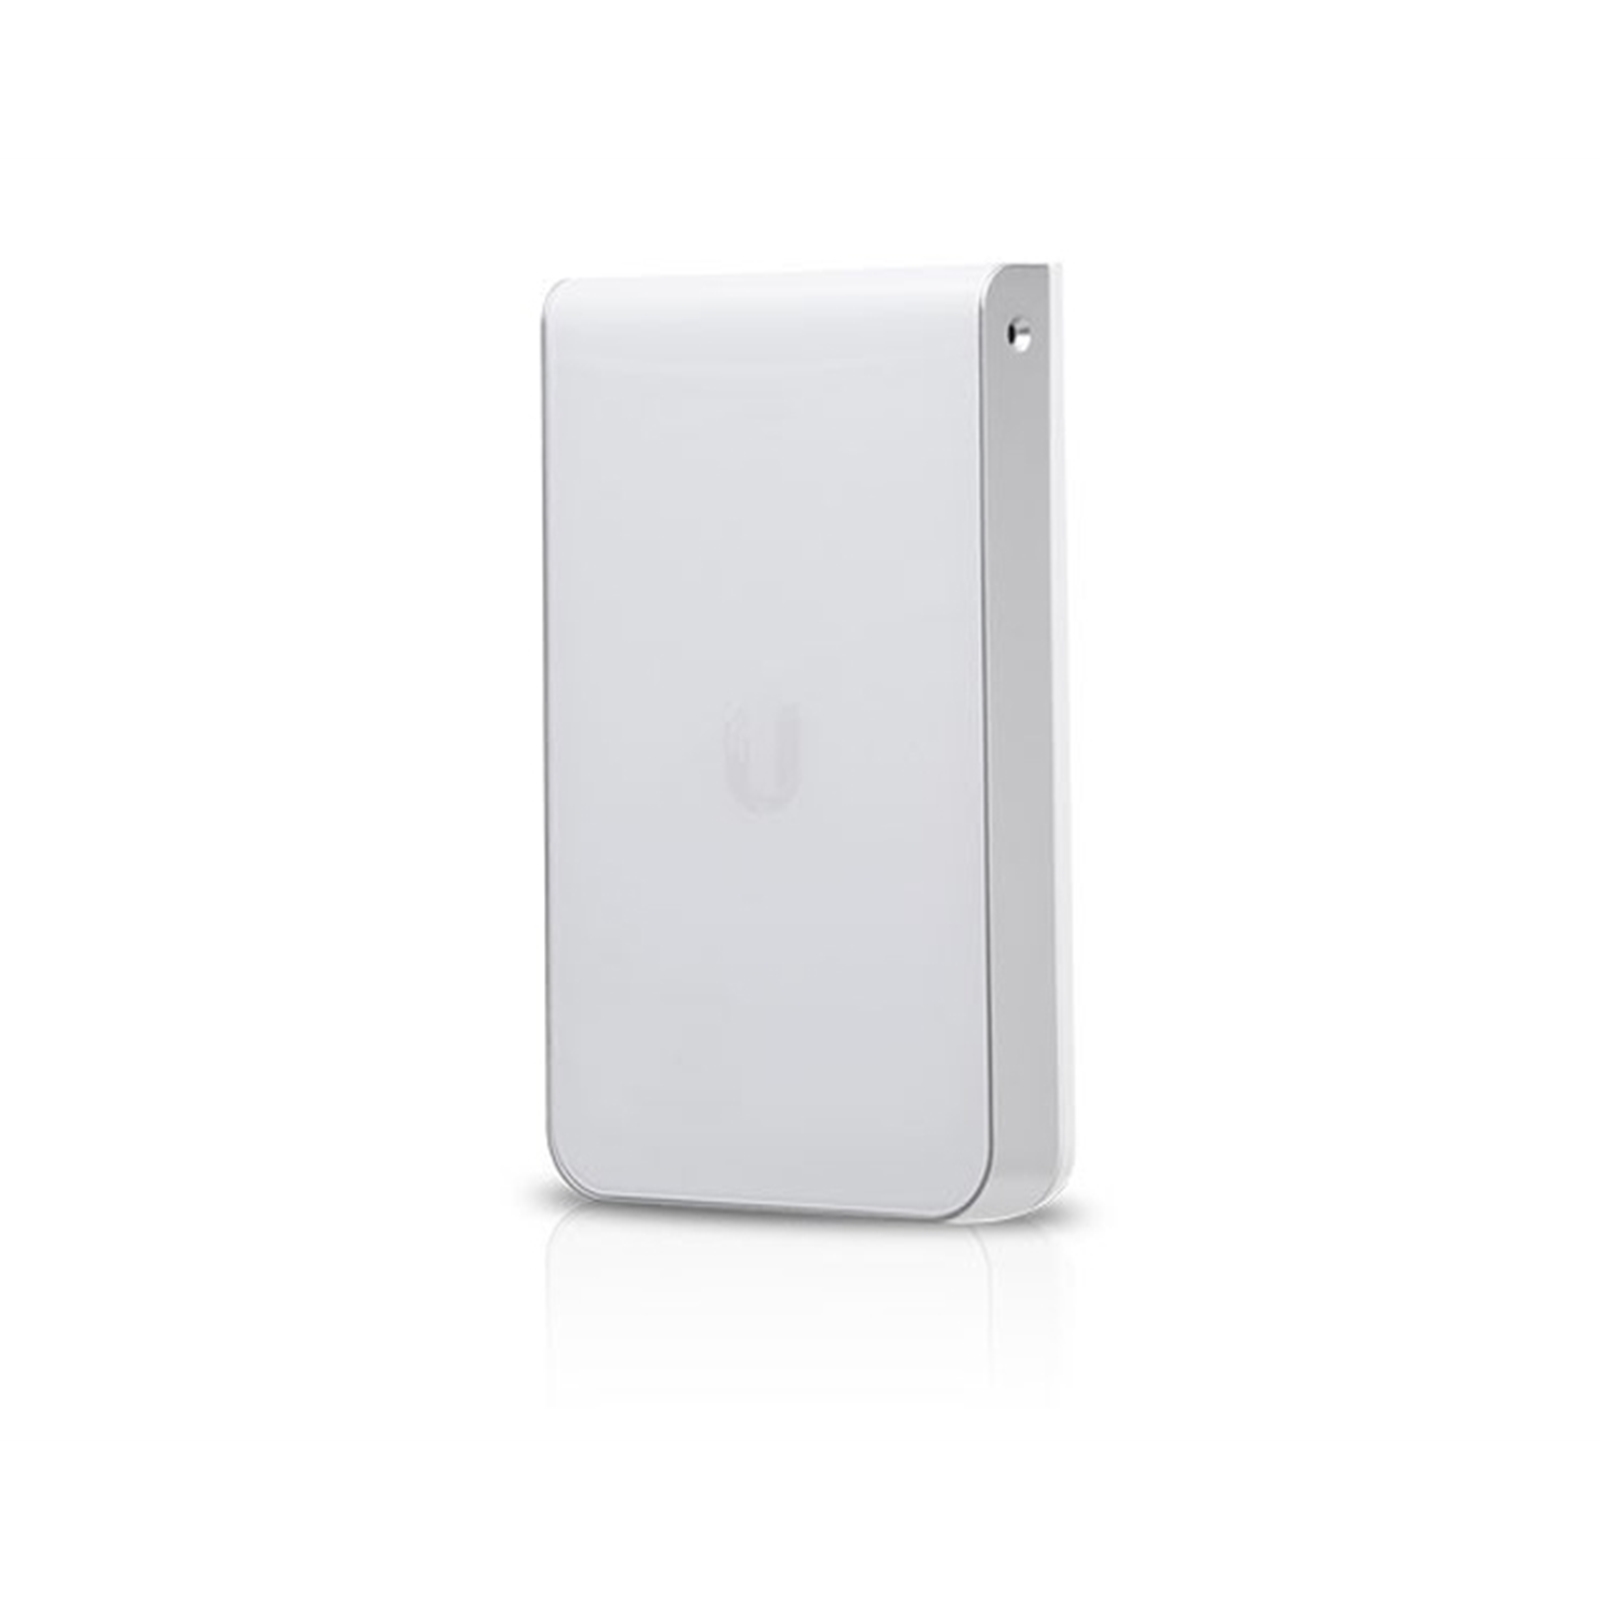 Ubiquiti UAP-IW-HD UniFi In-Wall 802.11ac Wave 2 Wi-Fi Access Point